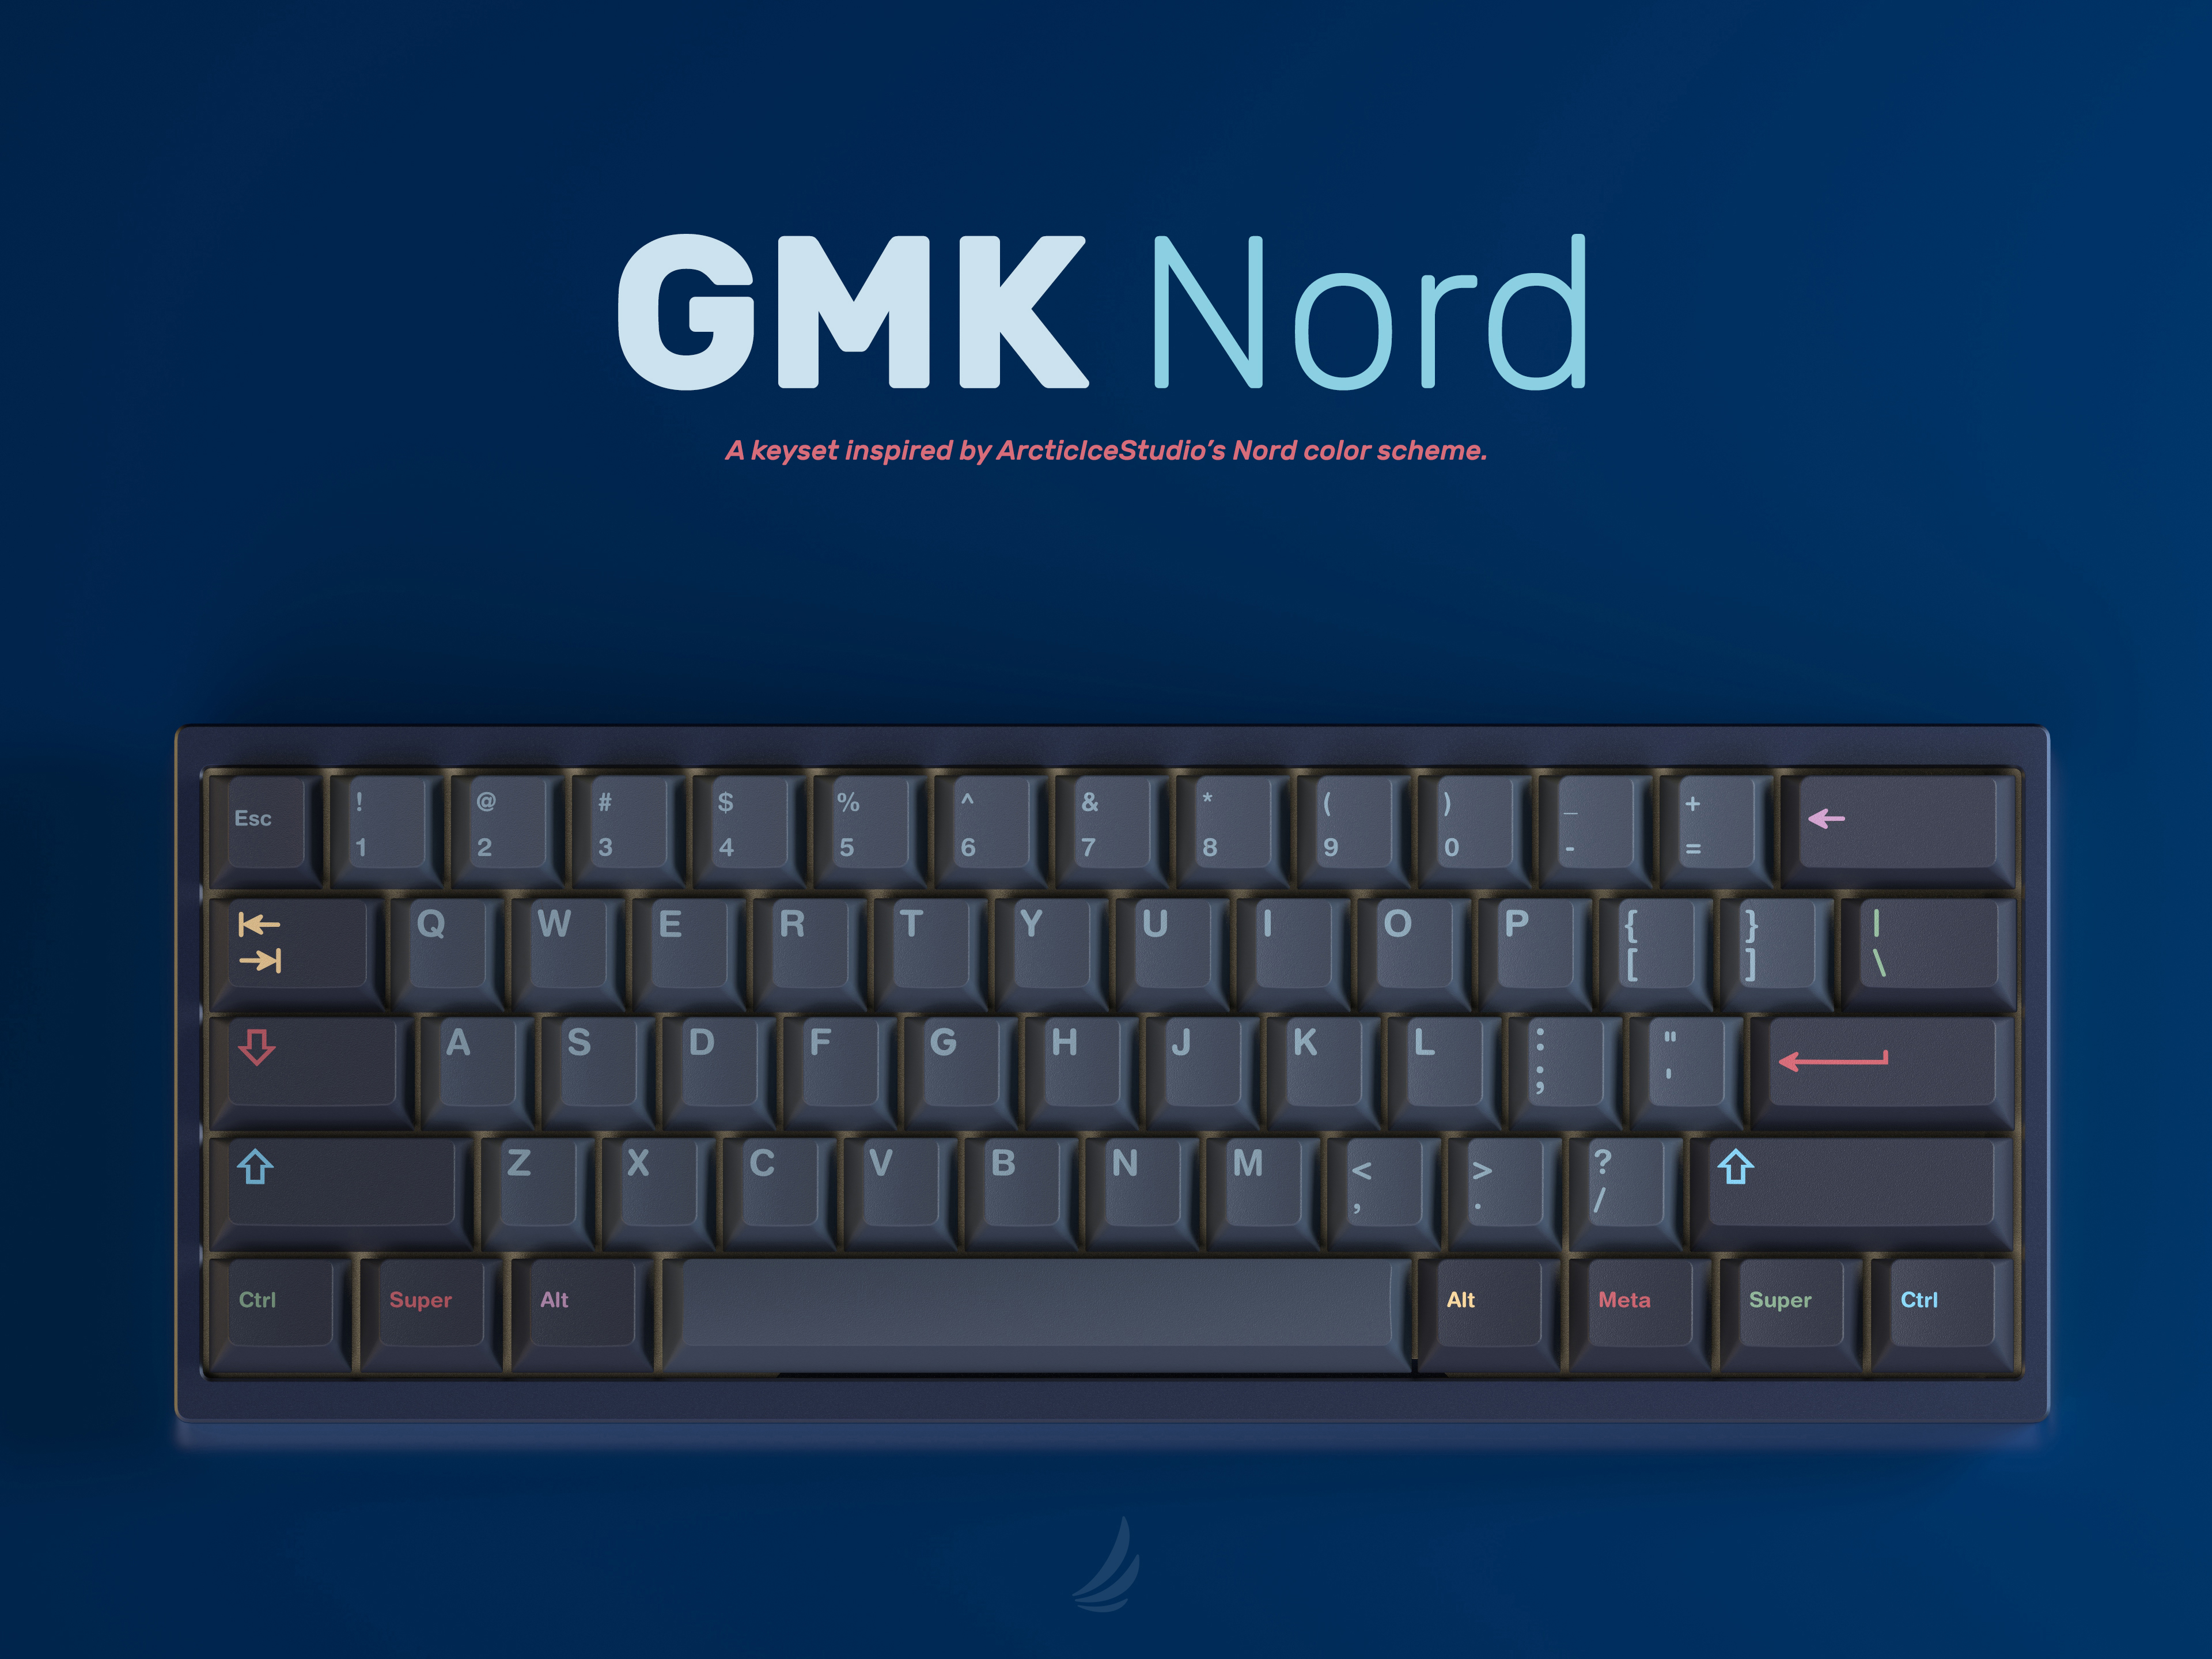 The GMK Nord keyboard